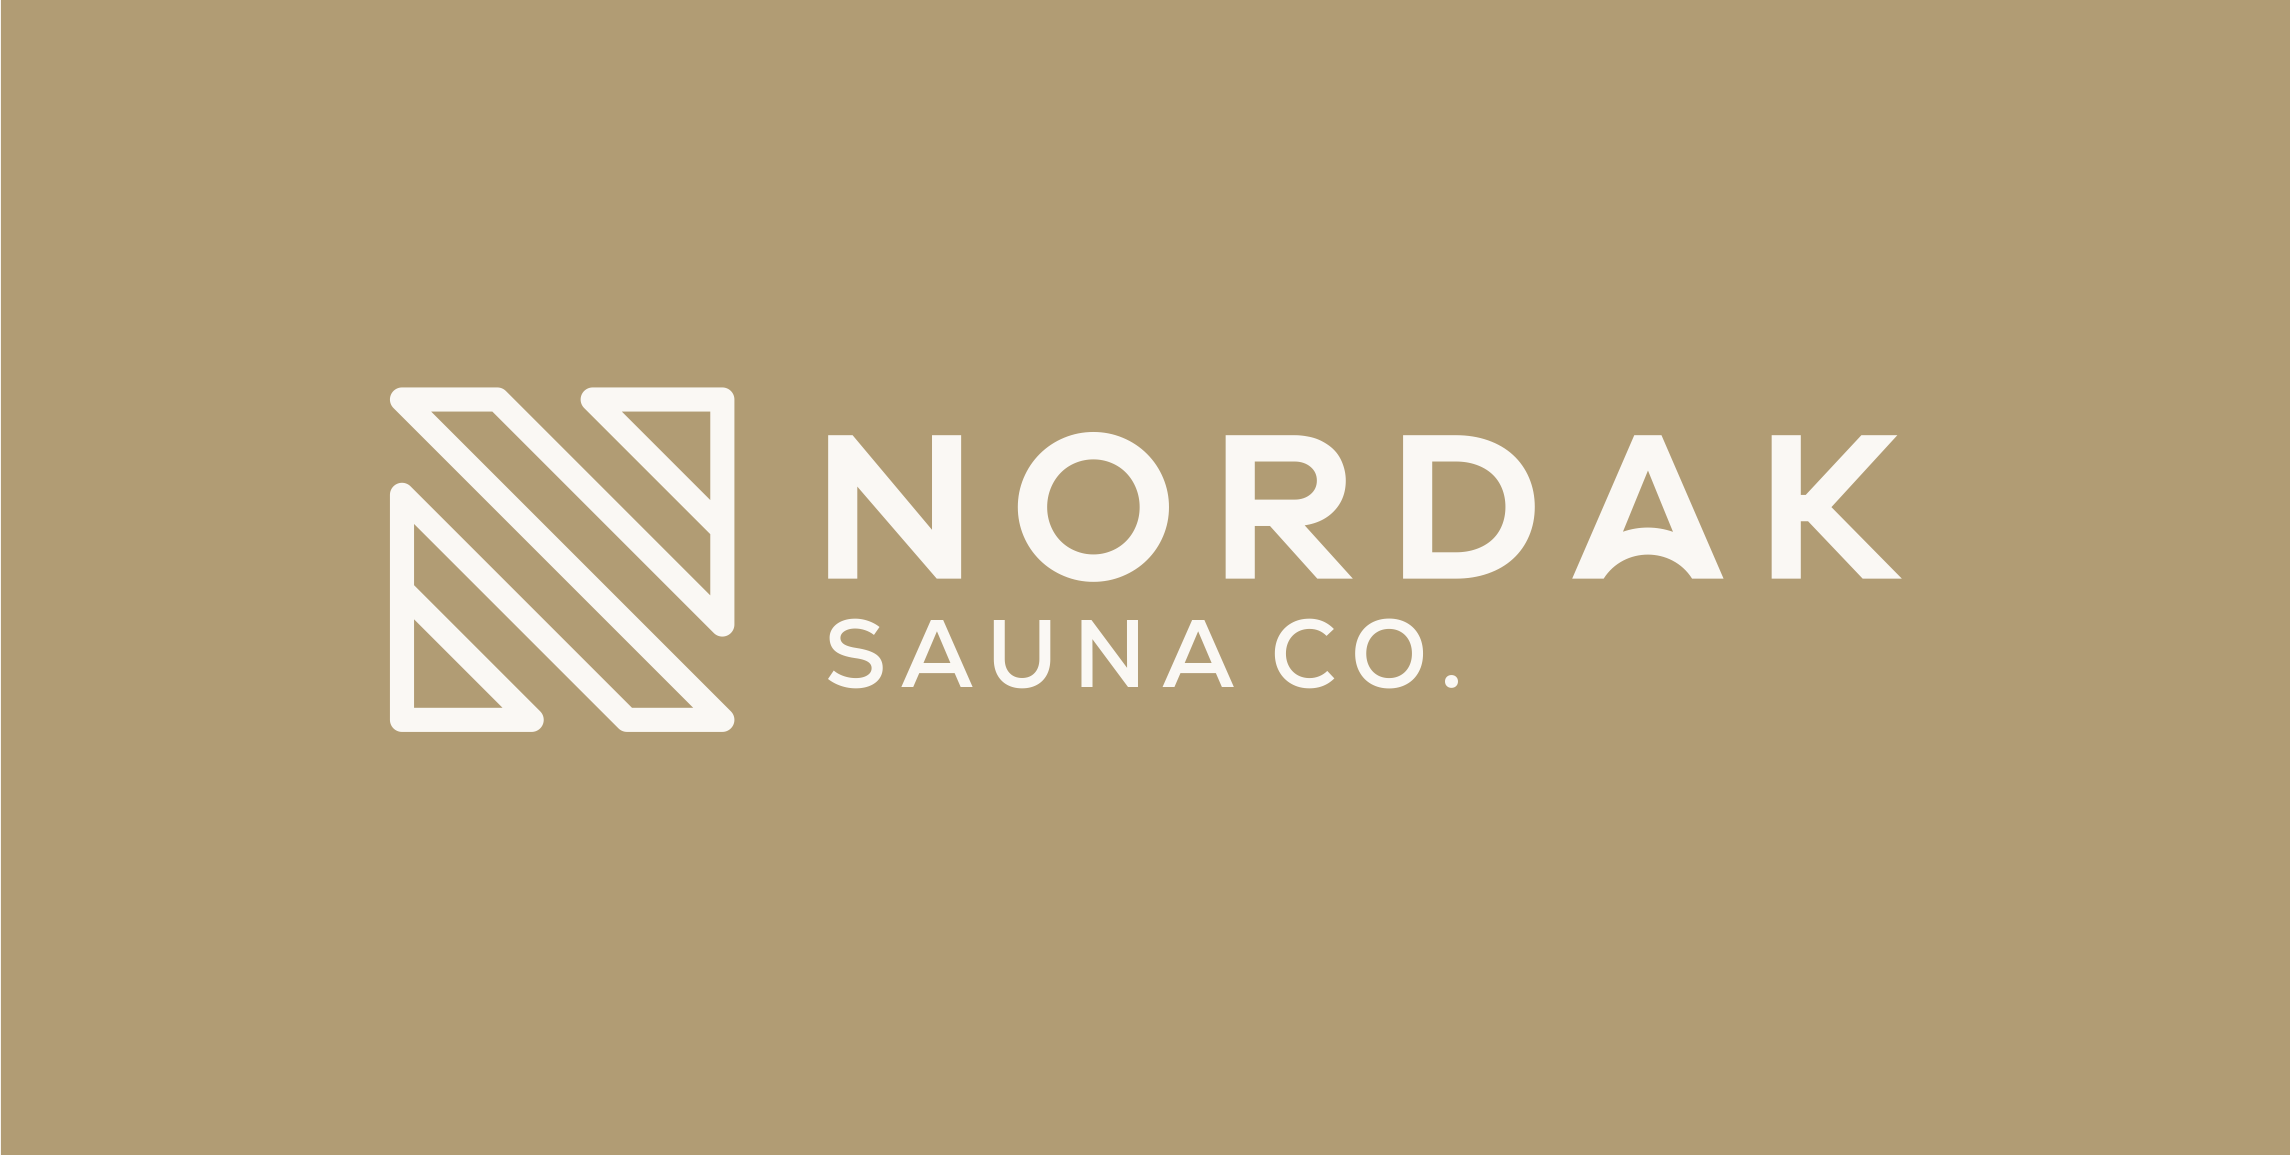 Nordak Sauna Co